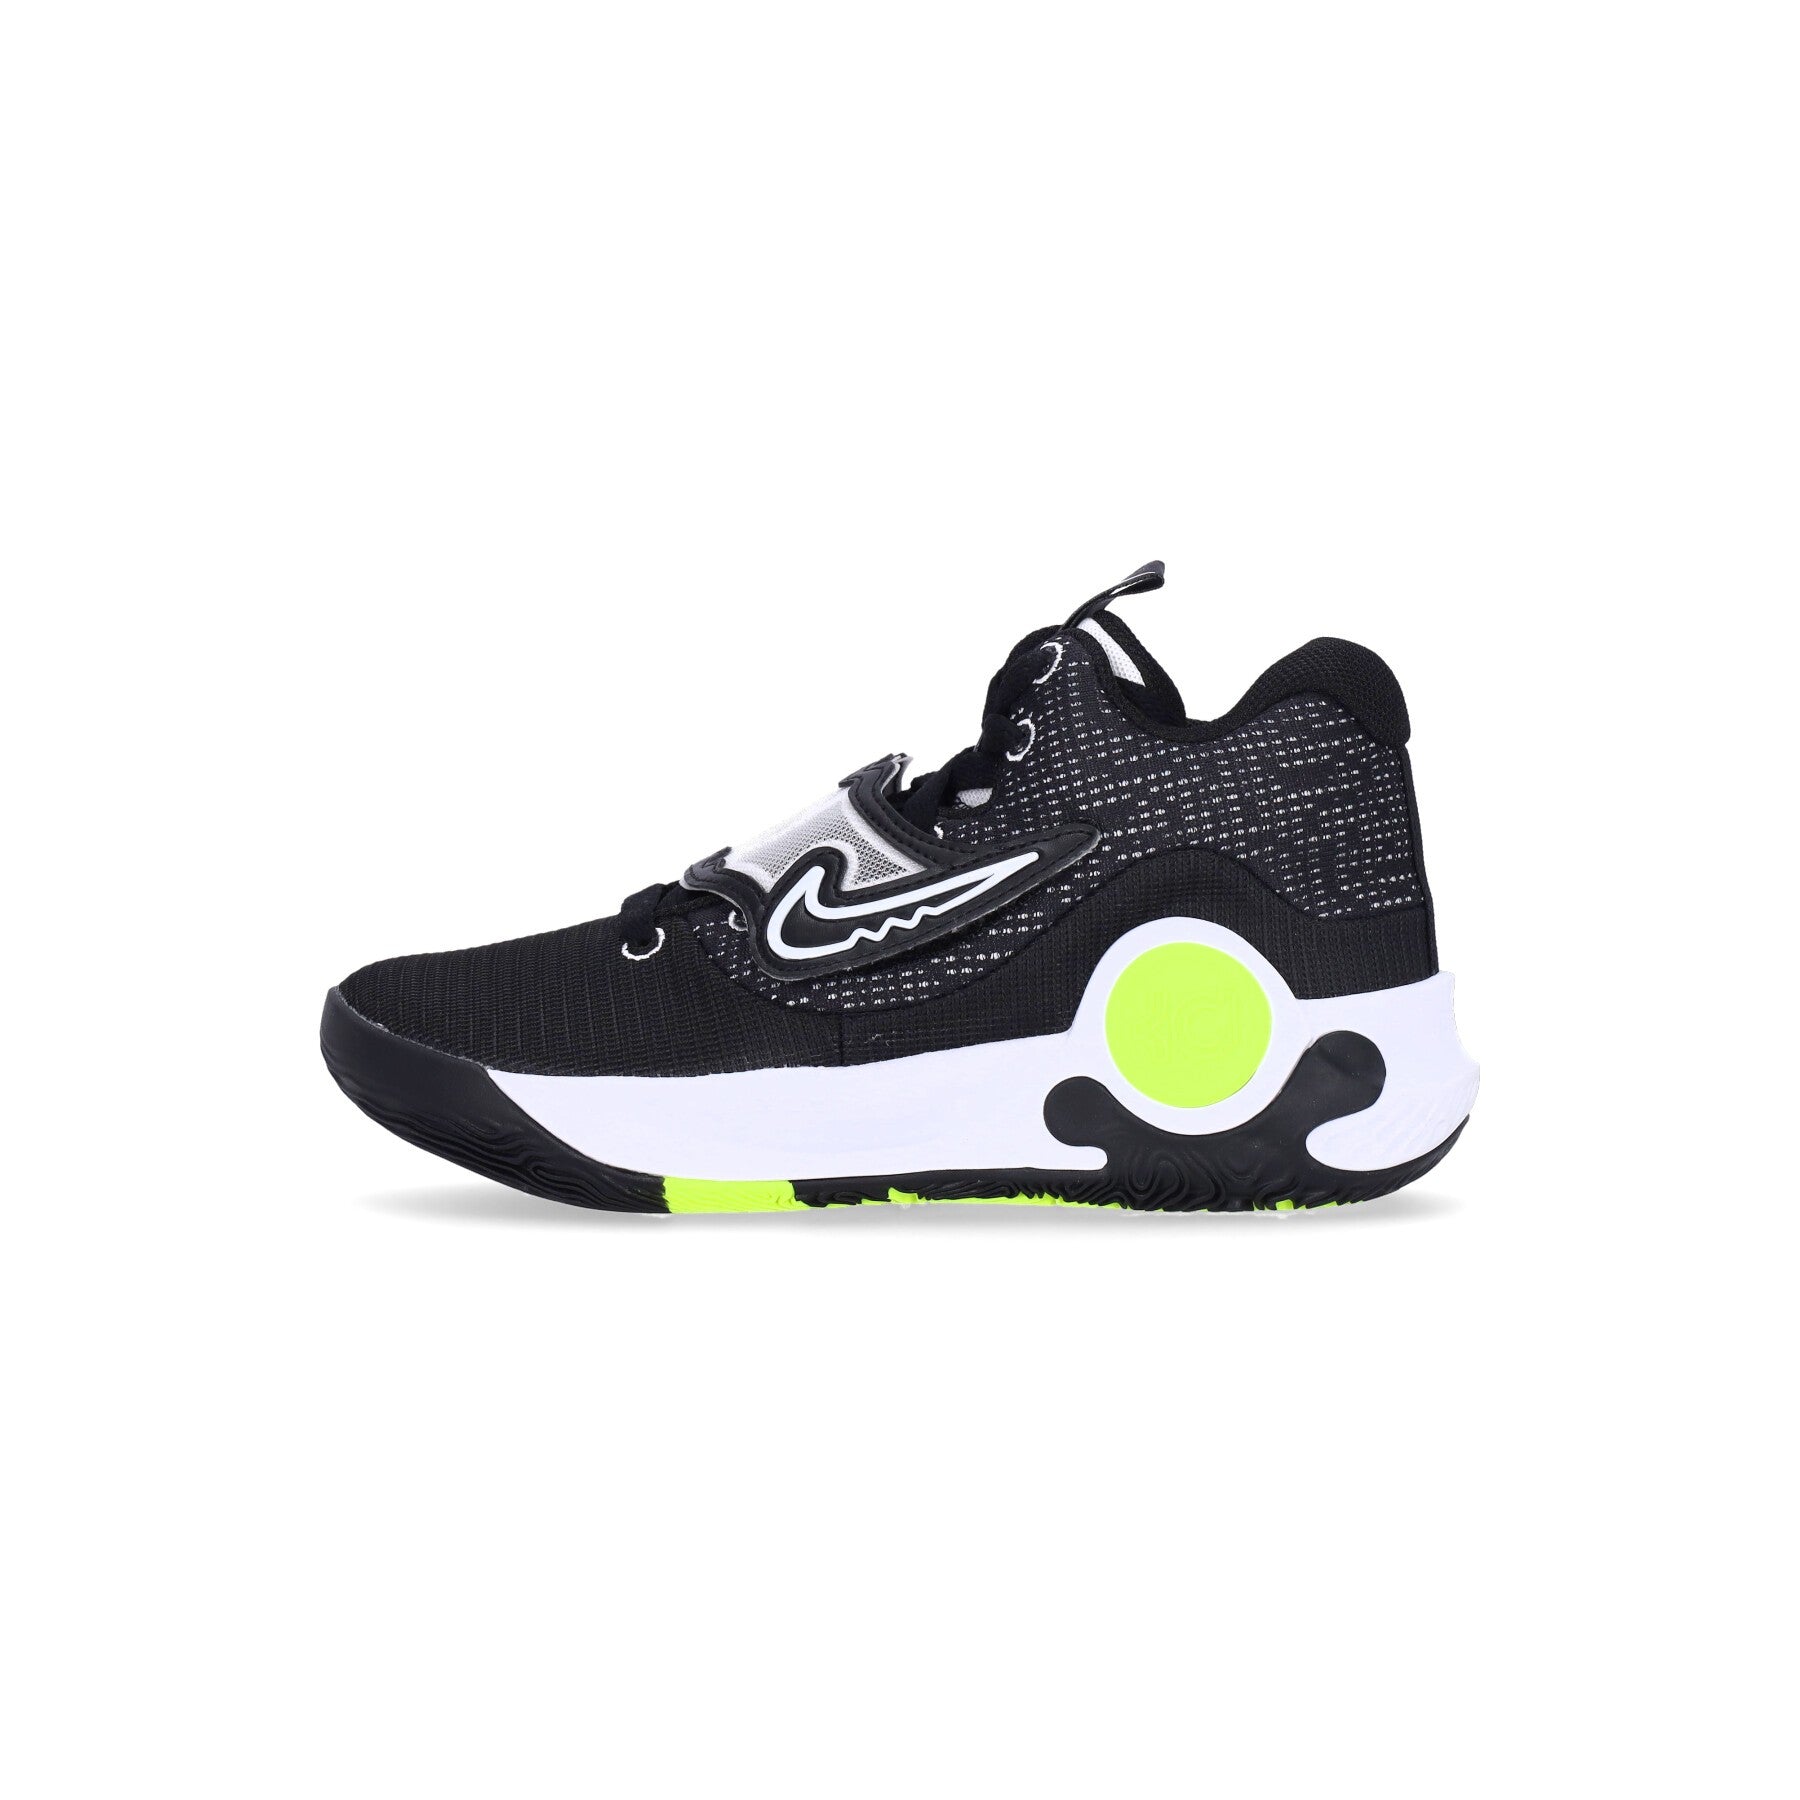 Nike Nba, Scarpa Basket Uomo Kd Trey 5 X, Black/white/volt